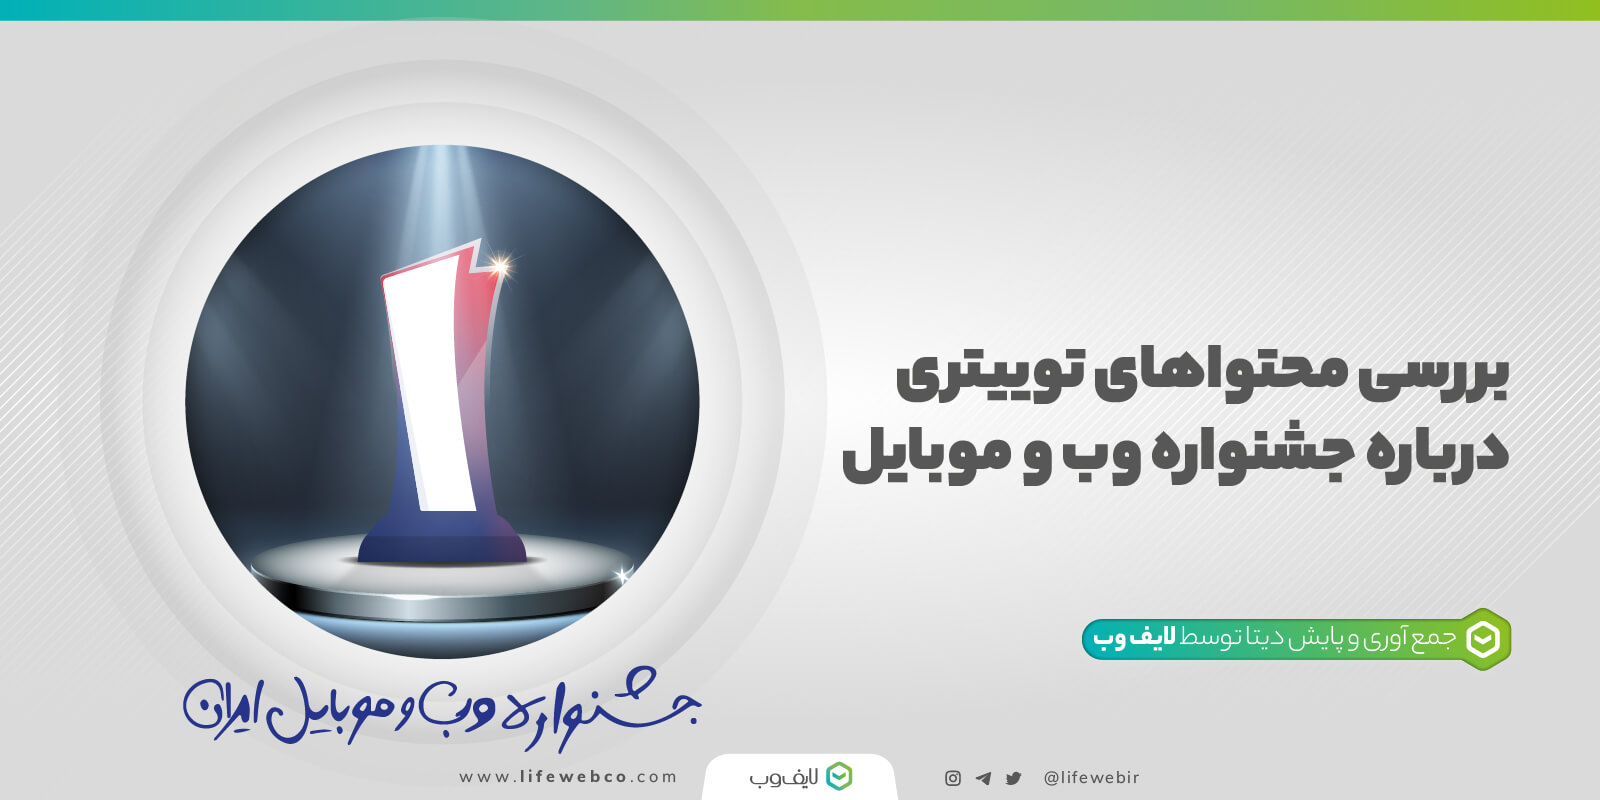 بررسی محتواهای توییتری درباره جشنواره وب و موبایل ایران از سال ۱۳۹۵ تا ۱۴۰۰